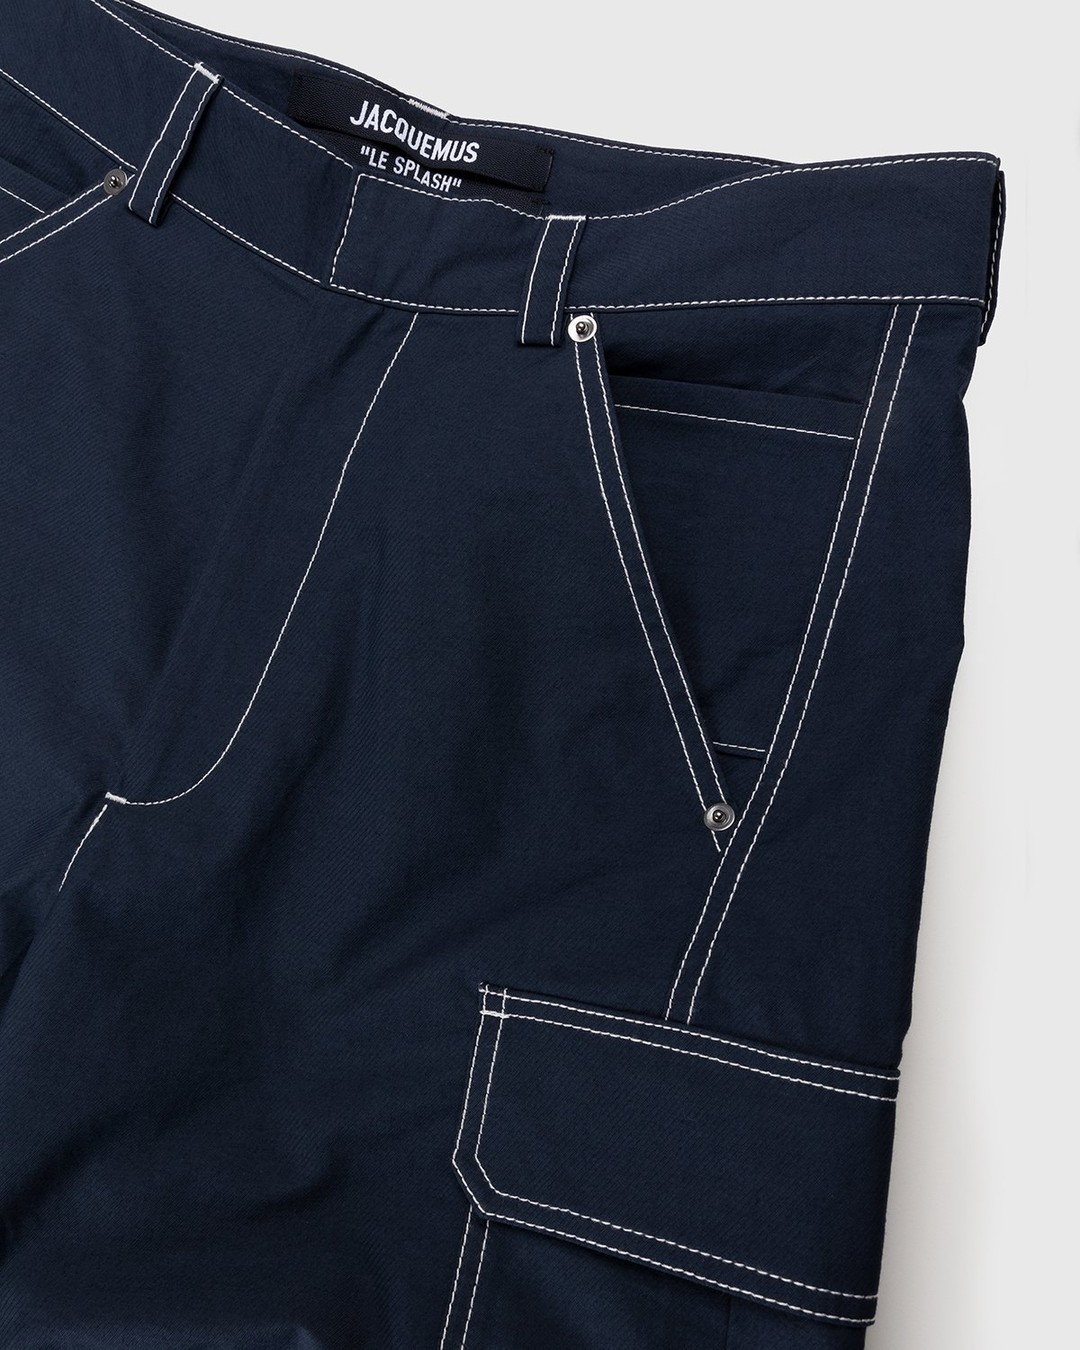 JACQUEMUS – Le Pantalon Peche Navy - Cargo Pants - Blue - Image 4